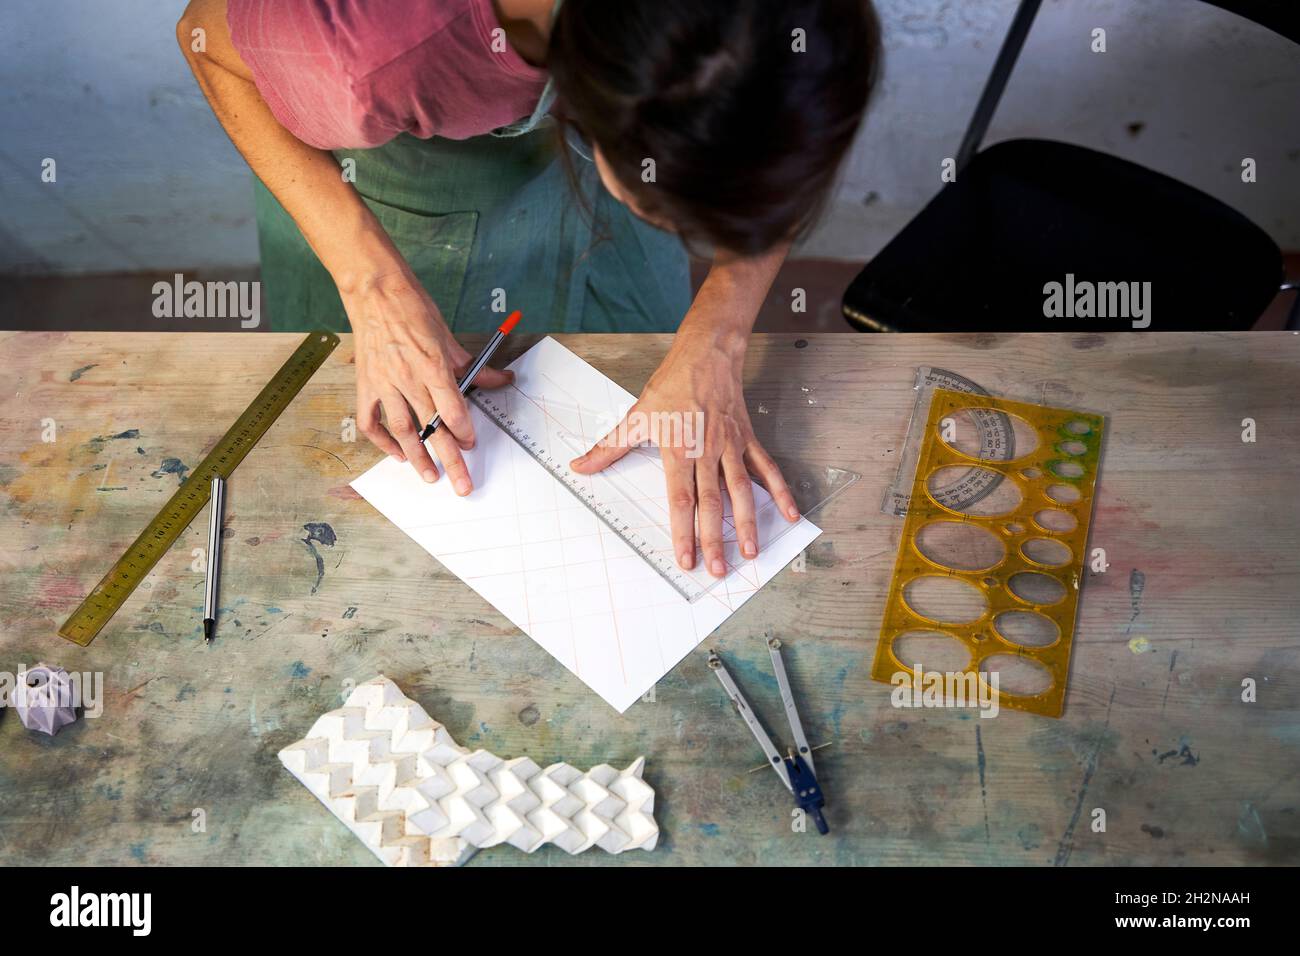 Dessin professionnel féminin sur papier pendant le travail en atelier Banque D'Images